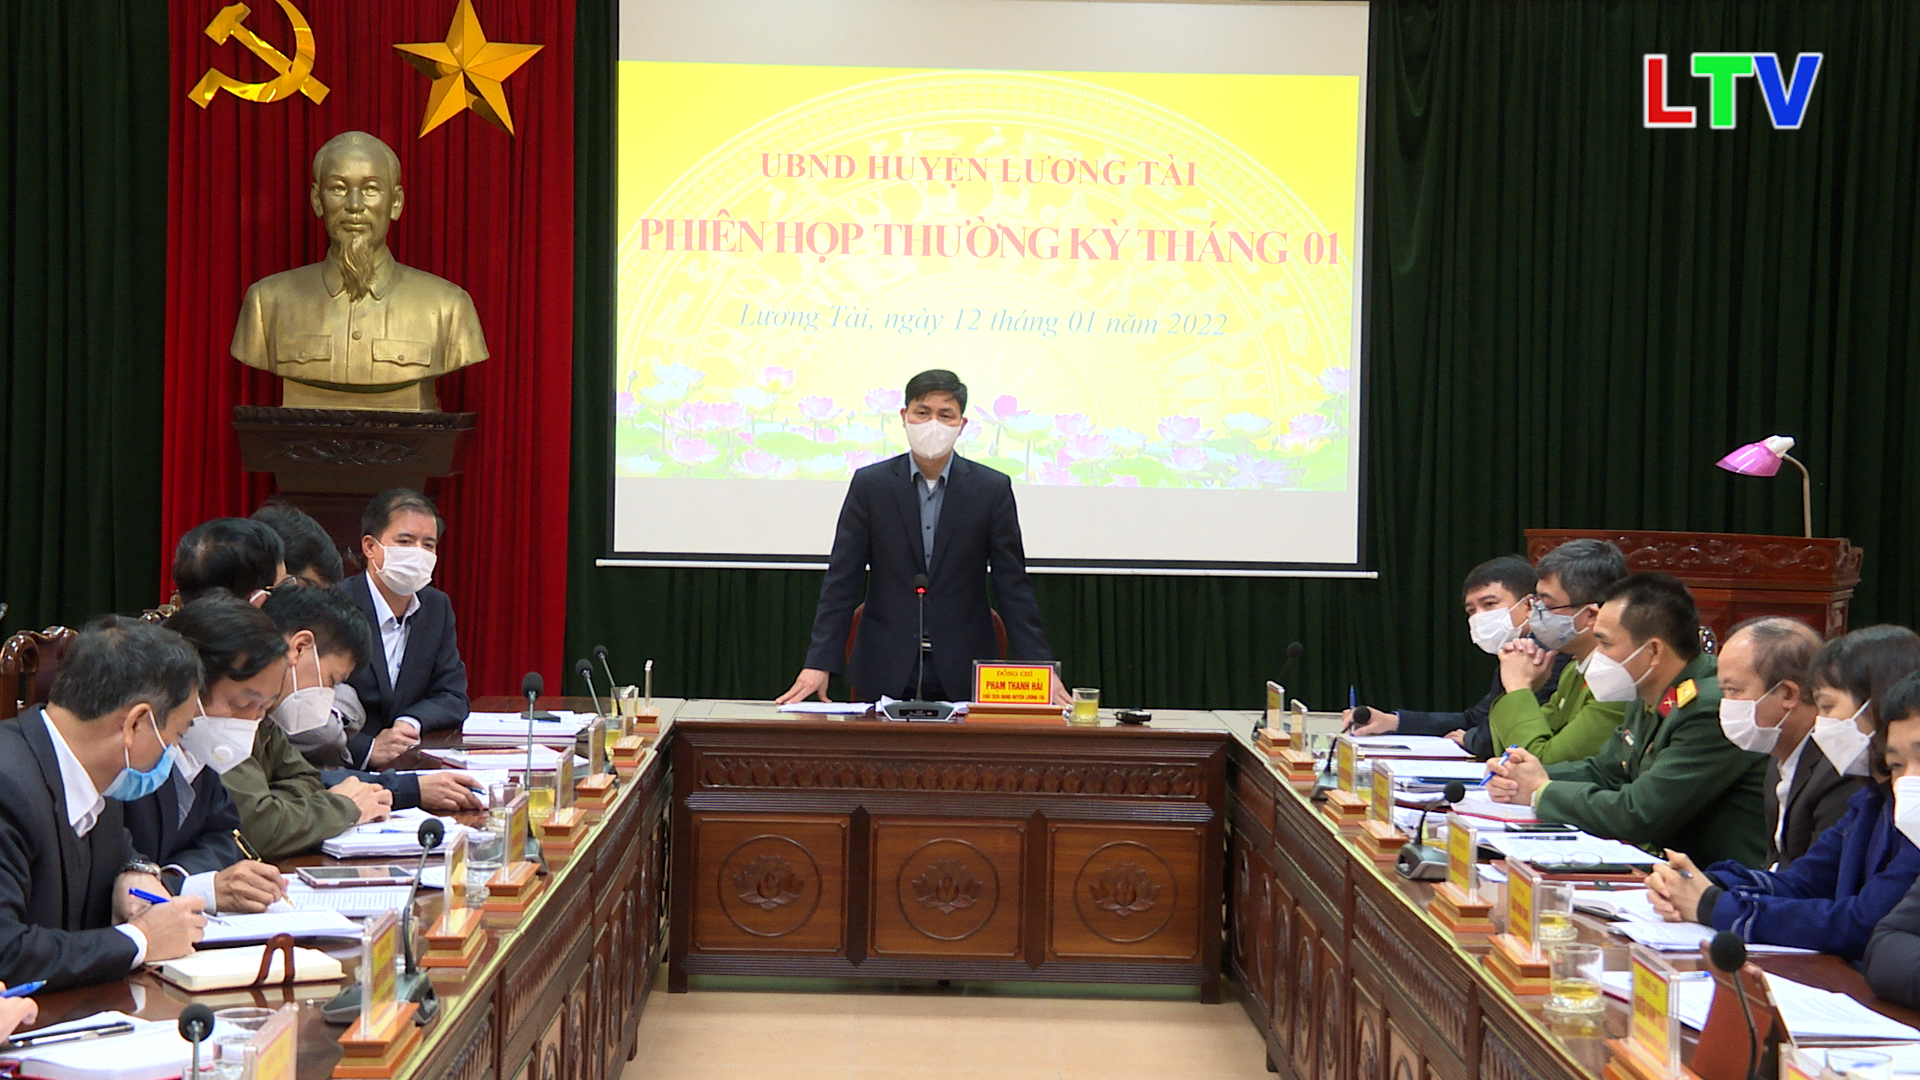 UBND huyện Lương Tài phiên họp thường kỳ tháng 1 năm 2022.mp4